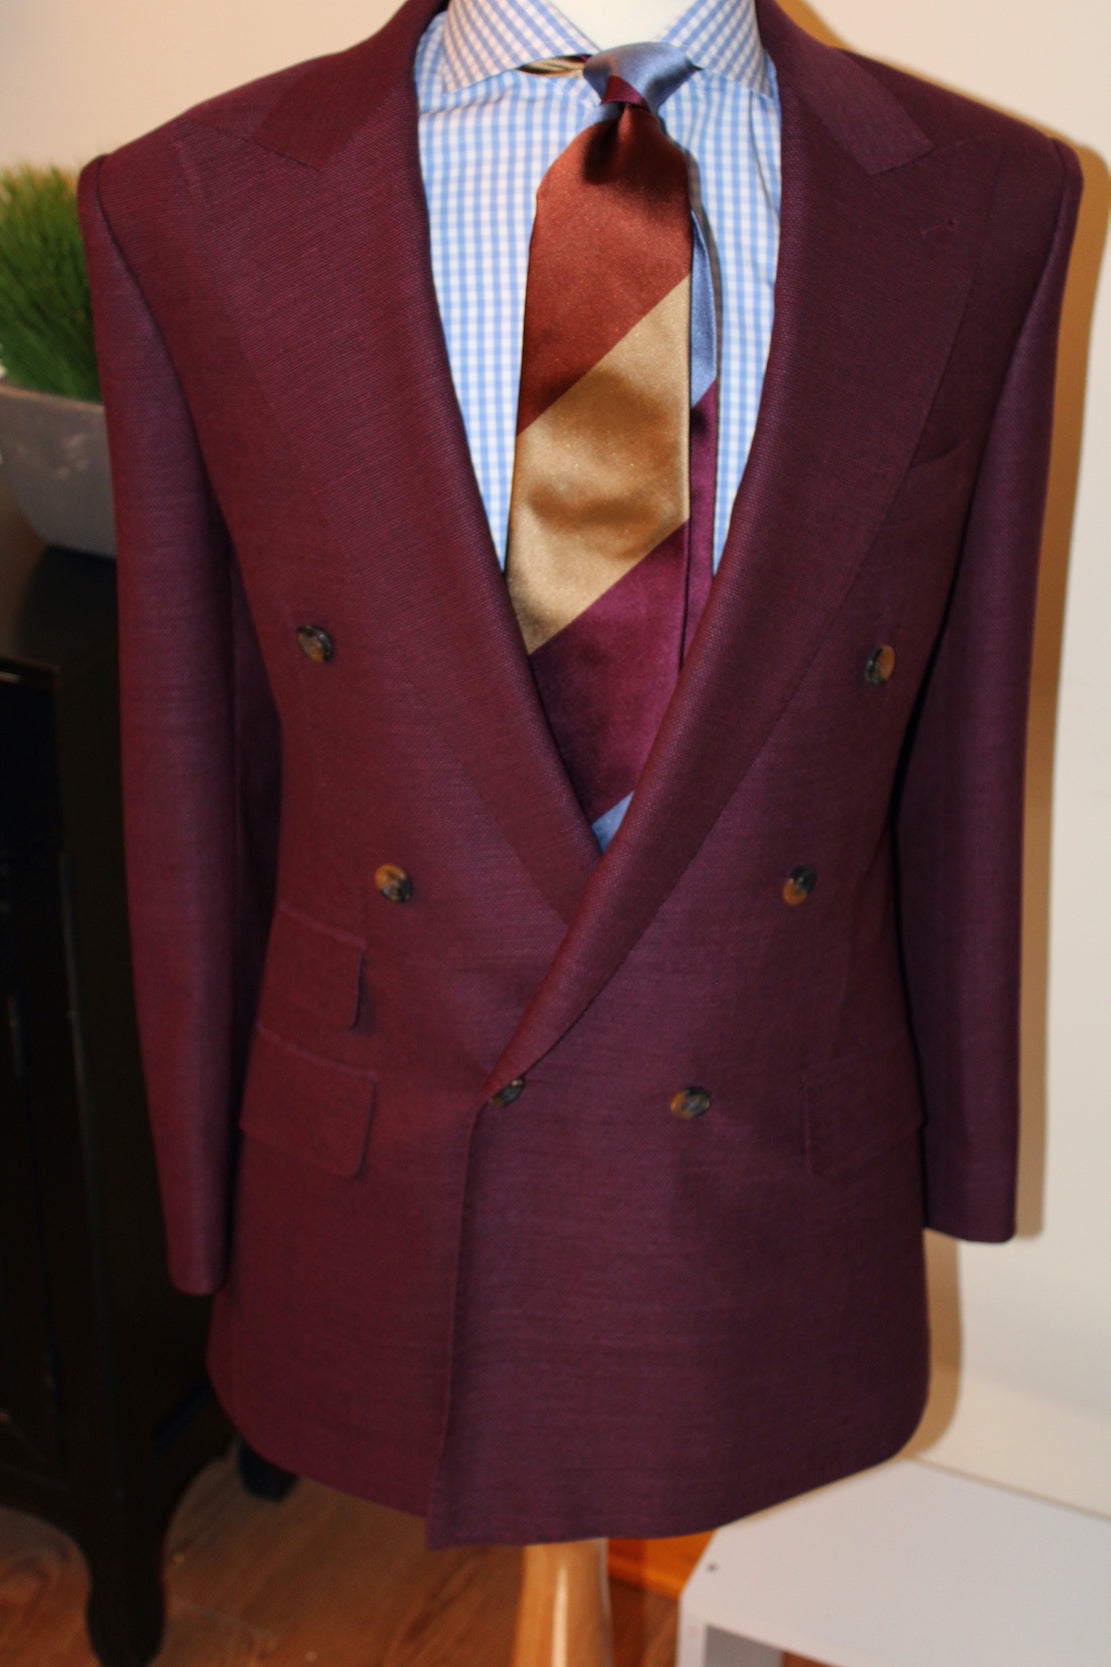 The Advantages of a Silk-Blend Suit